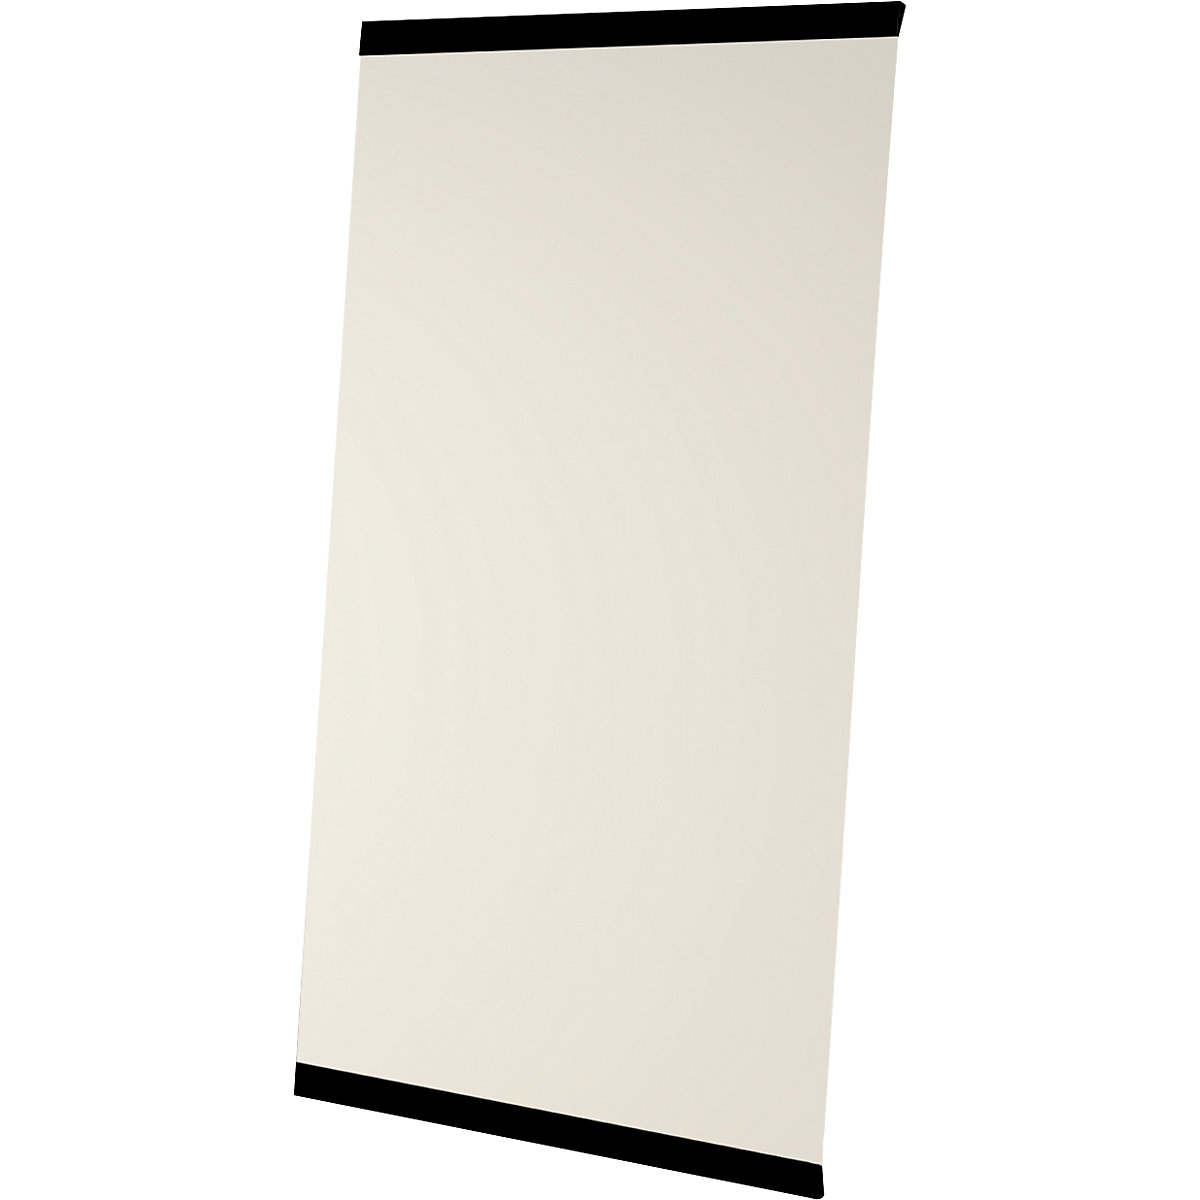 LEAN WALL whiteboard, frameless – Chameleon